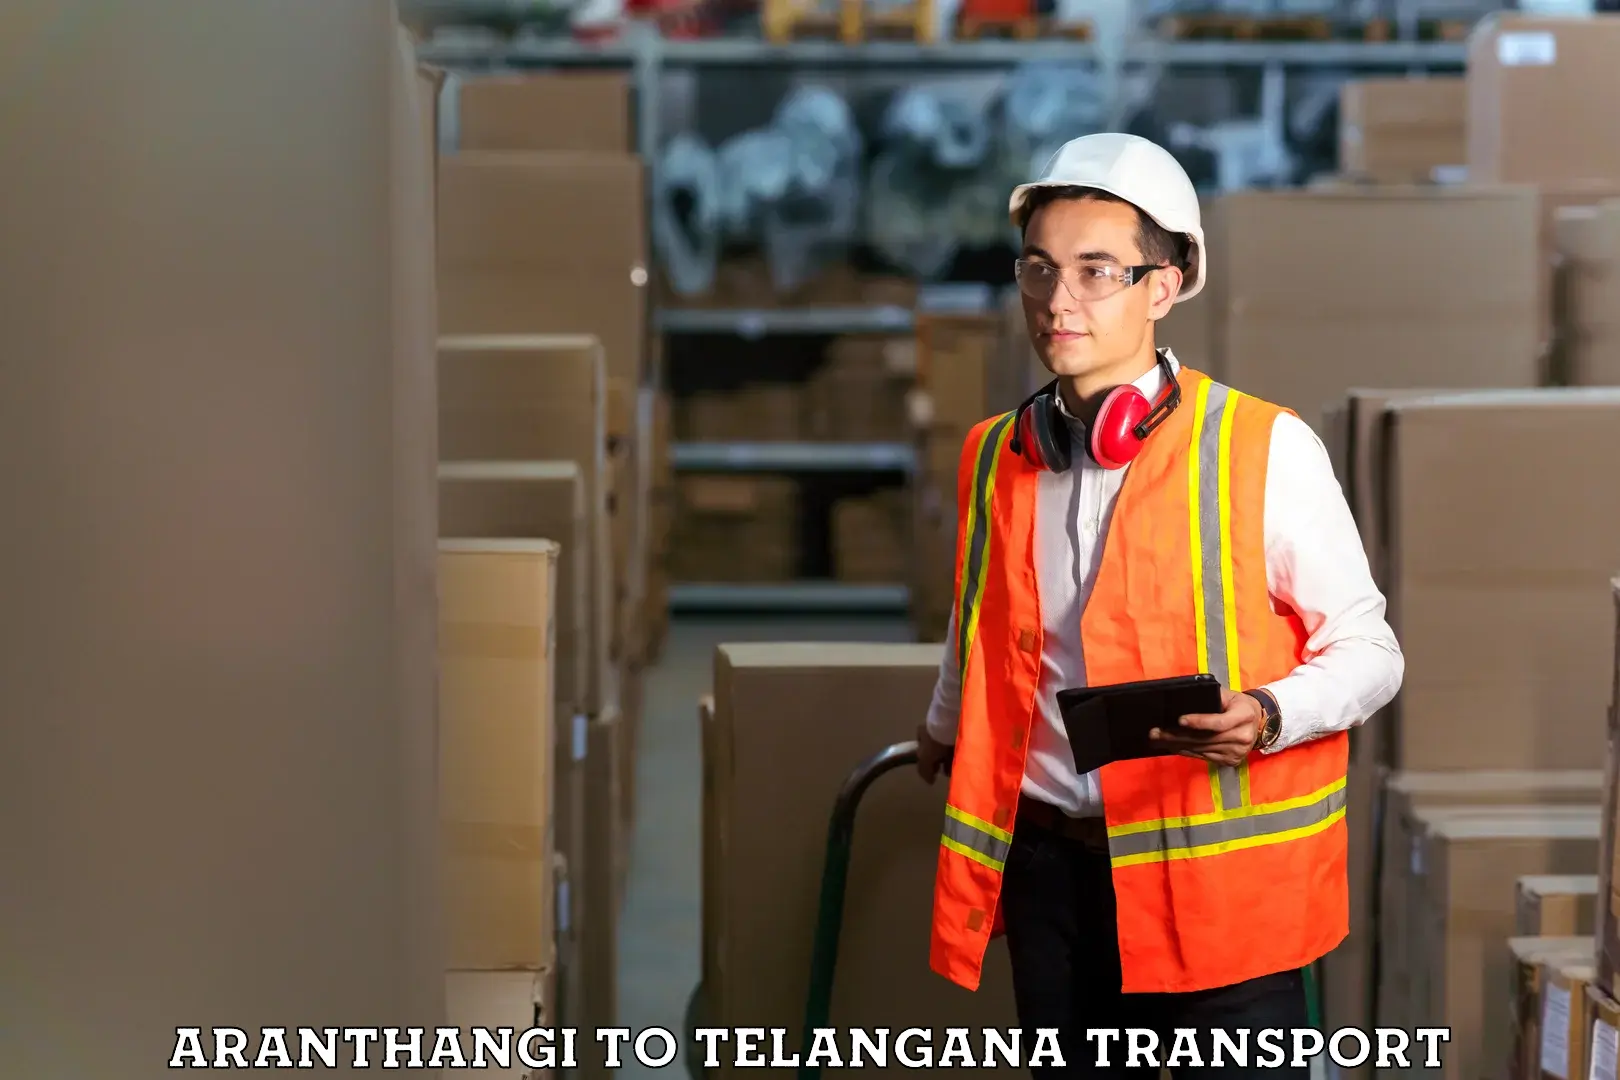 Furniture transport service Aranthangi to Sirikonda